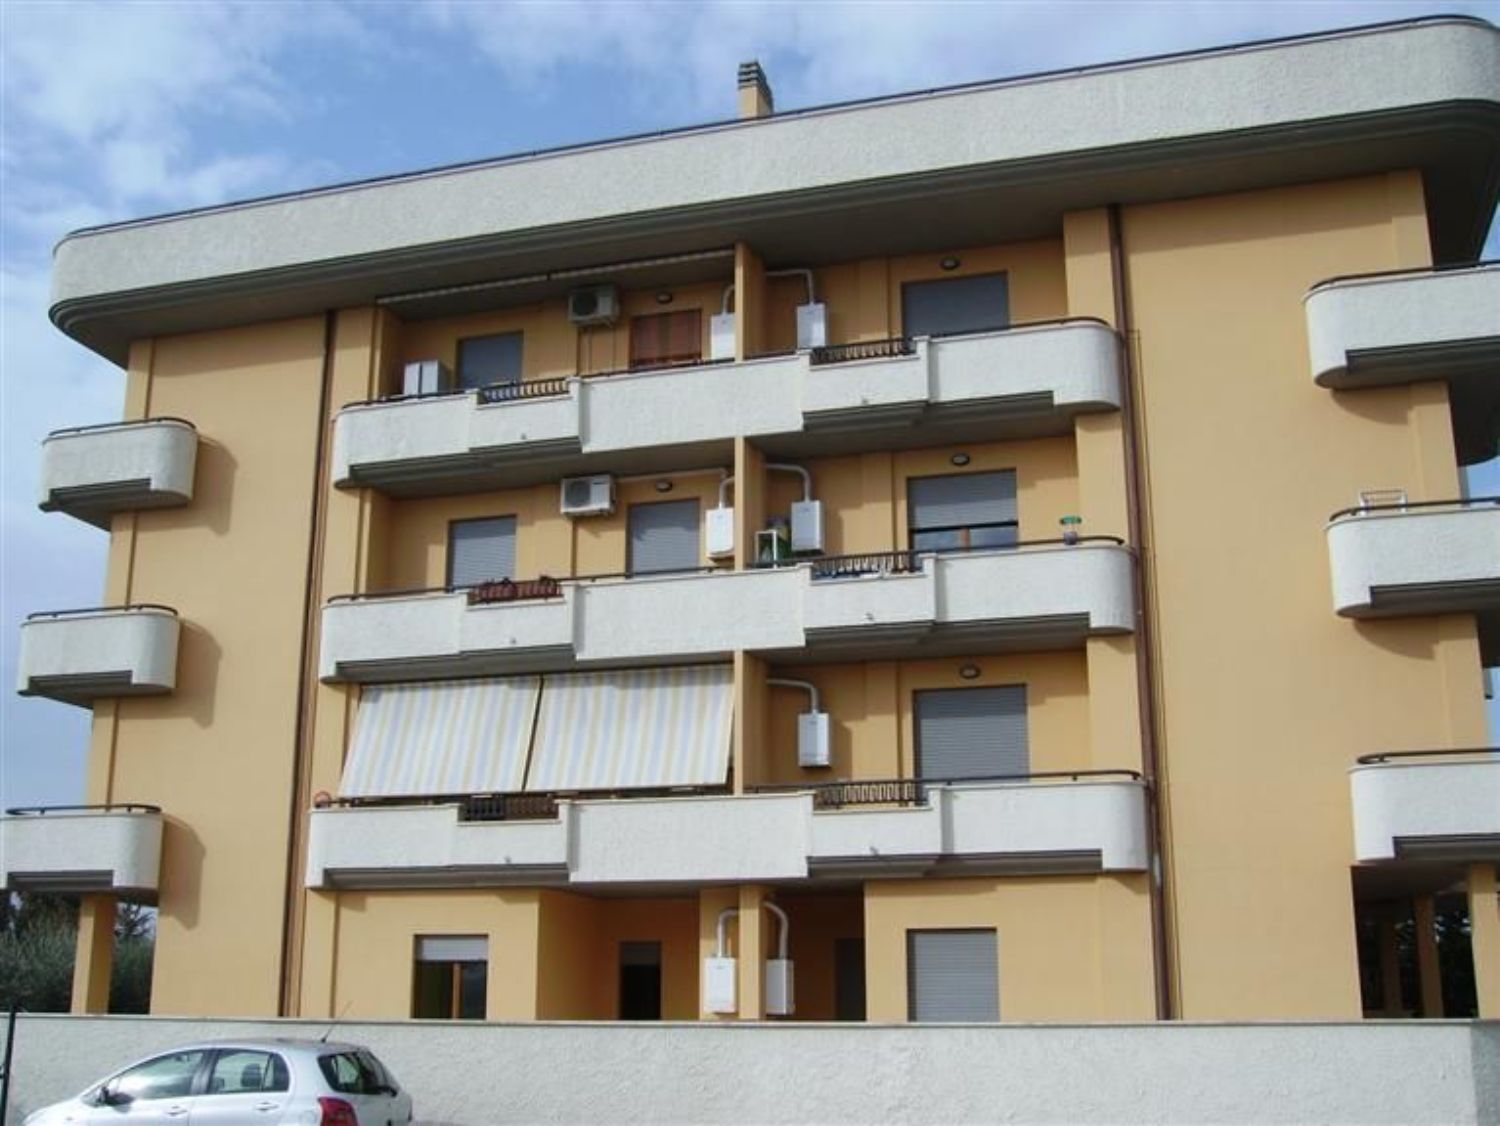 Appartamento in vendita a Cisterna di Latina, 3 locali, prezzo € 95.000 | PortaleAgenzieImmobiliari.it